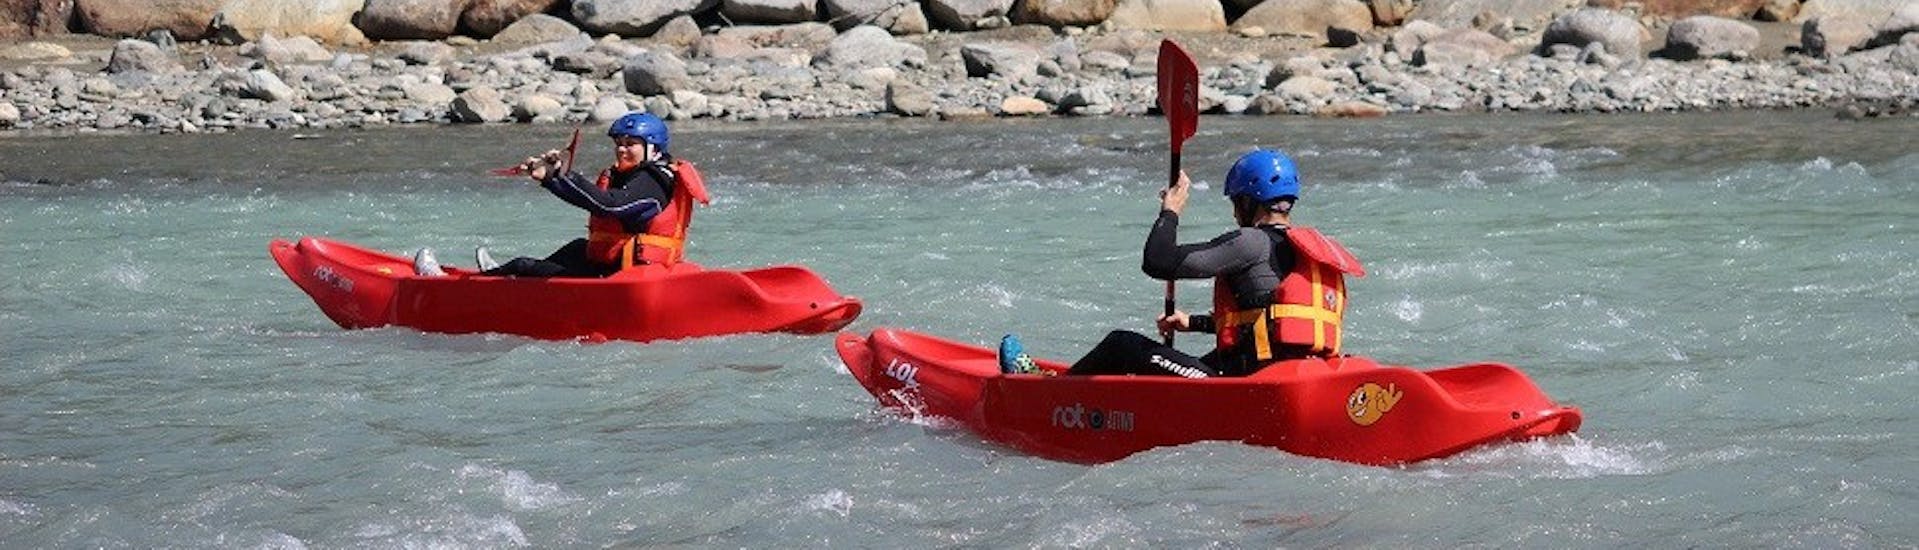 Partecipante del Kayak Fun sull'Adda con Indomita Valtellina River.